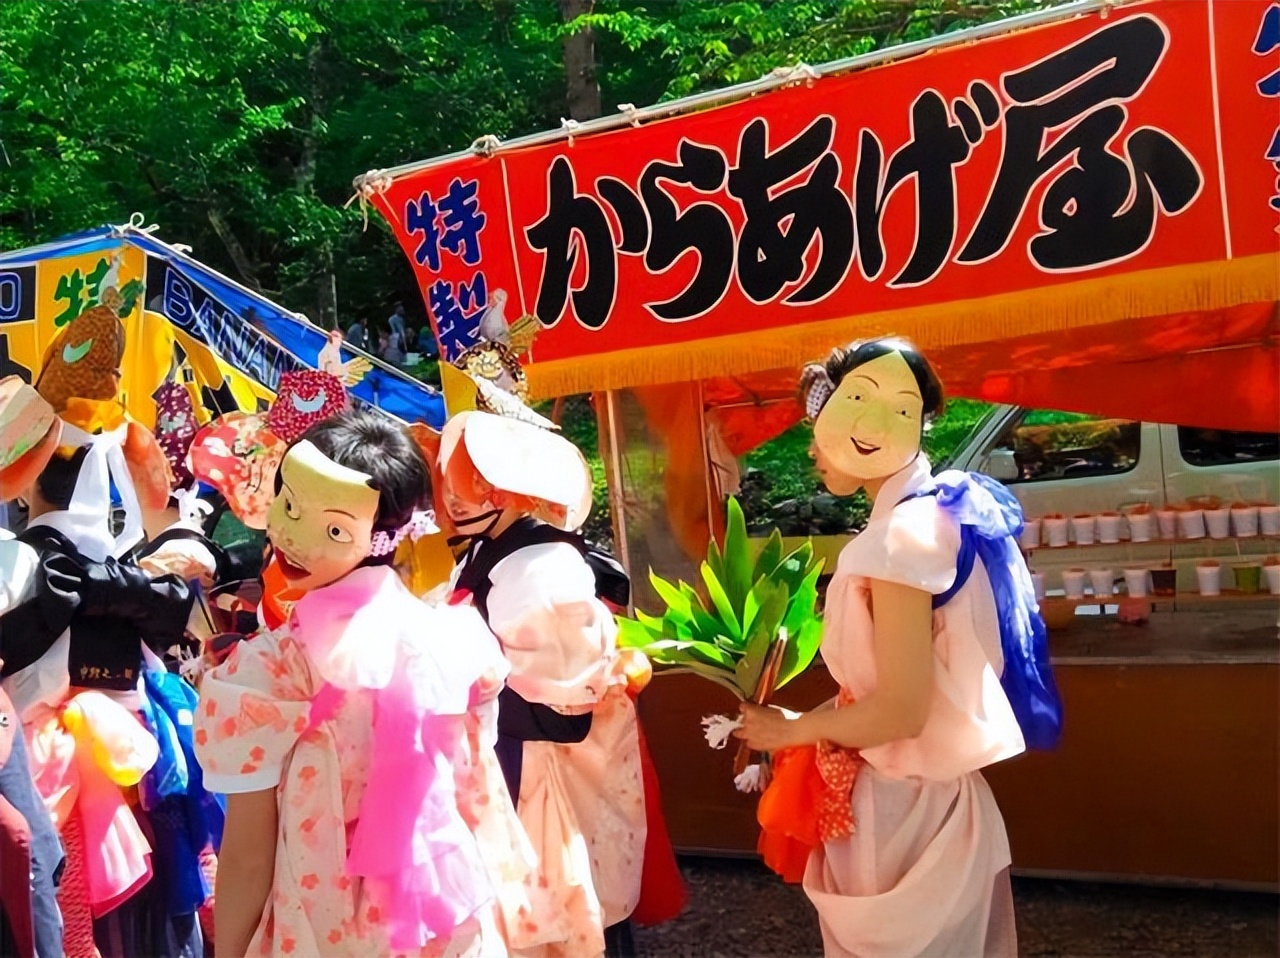 南京夏日祭被全网痛骂!国人就这么好欺负?要日本文化就不要良心?